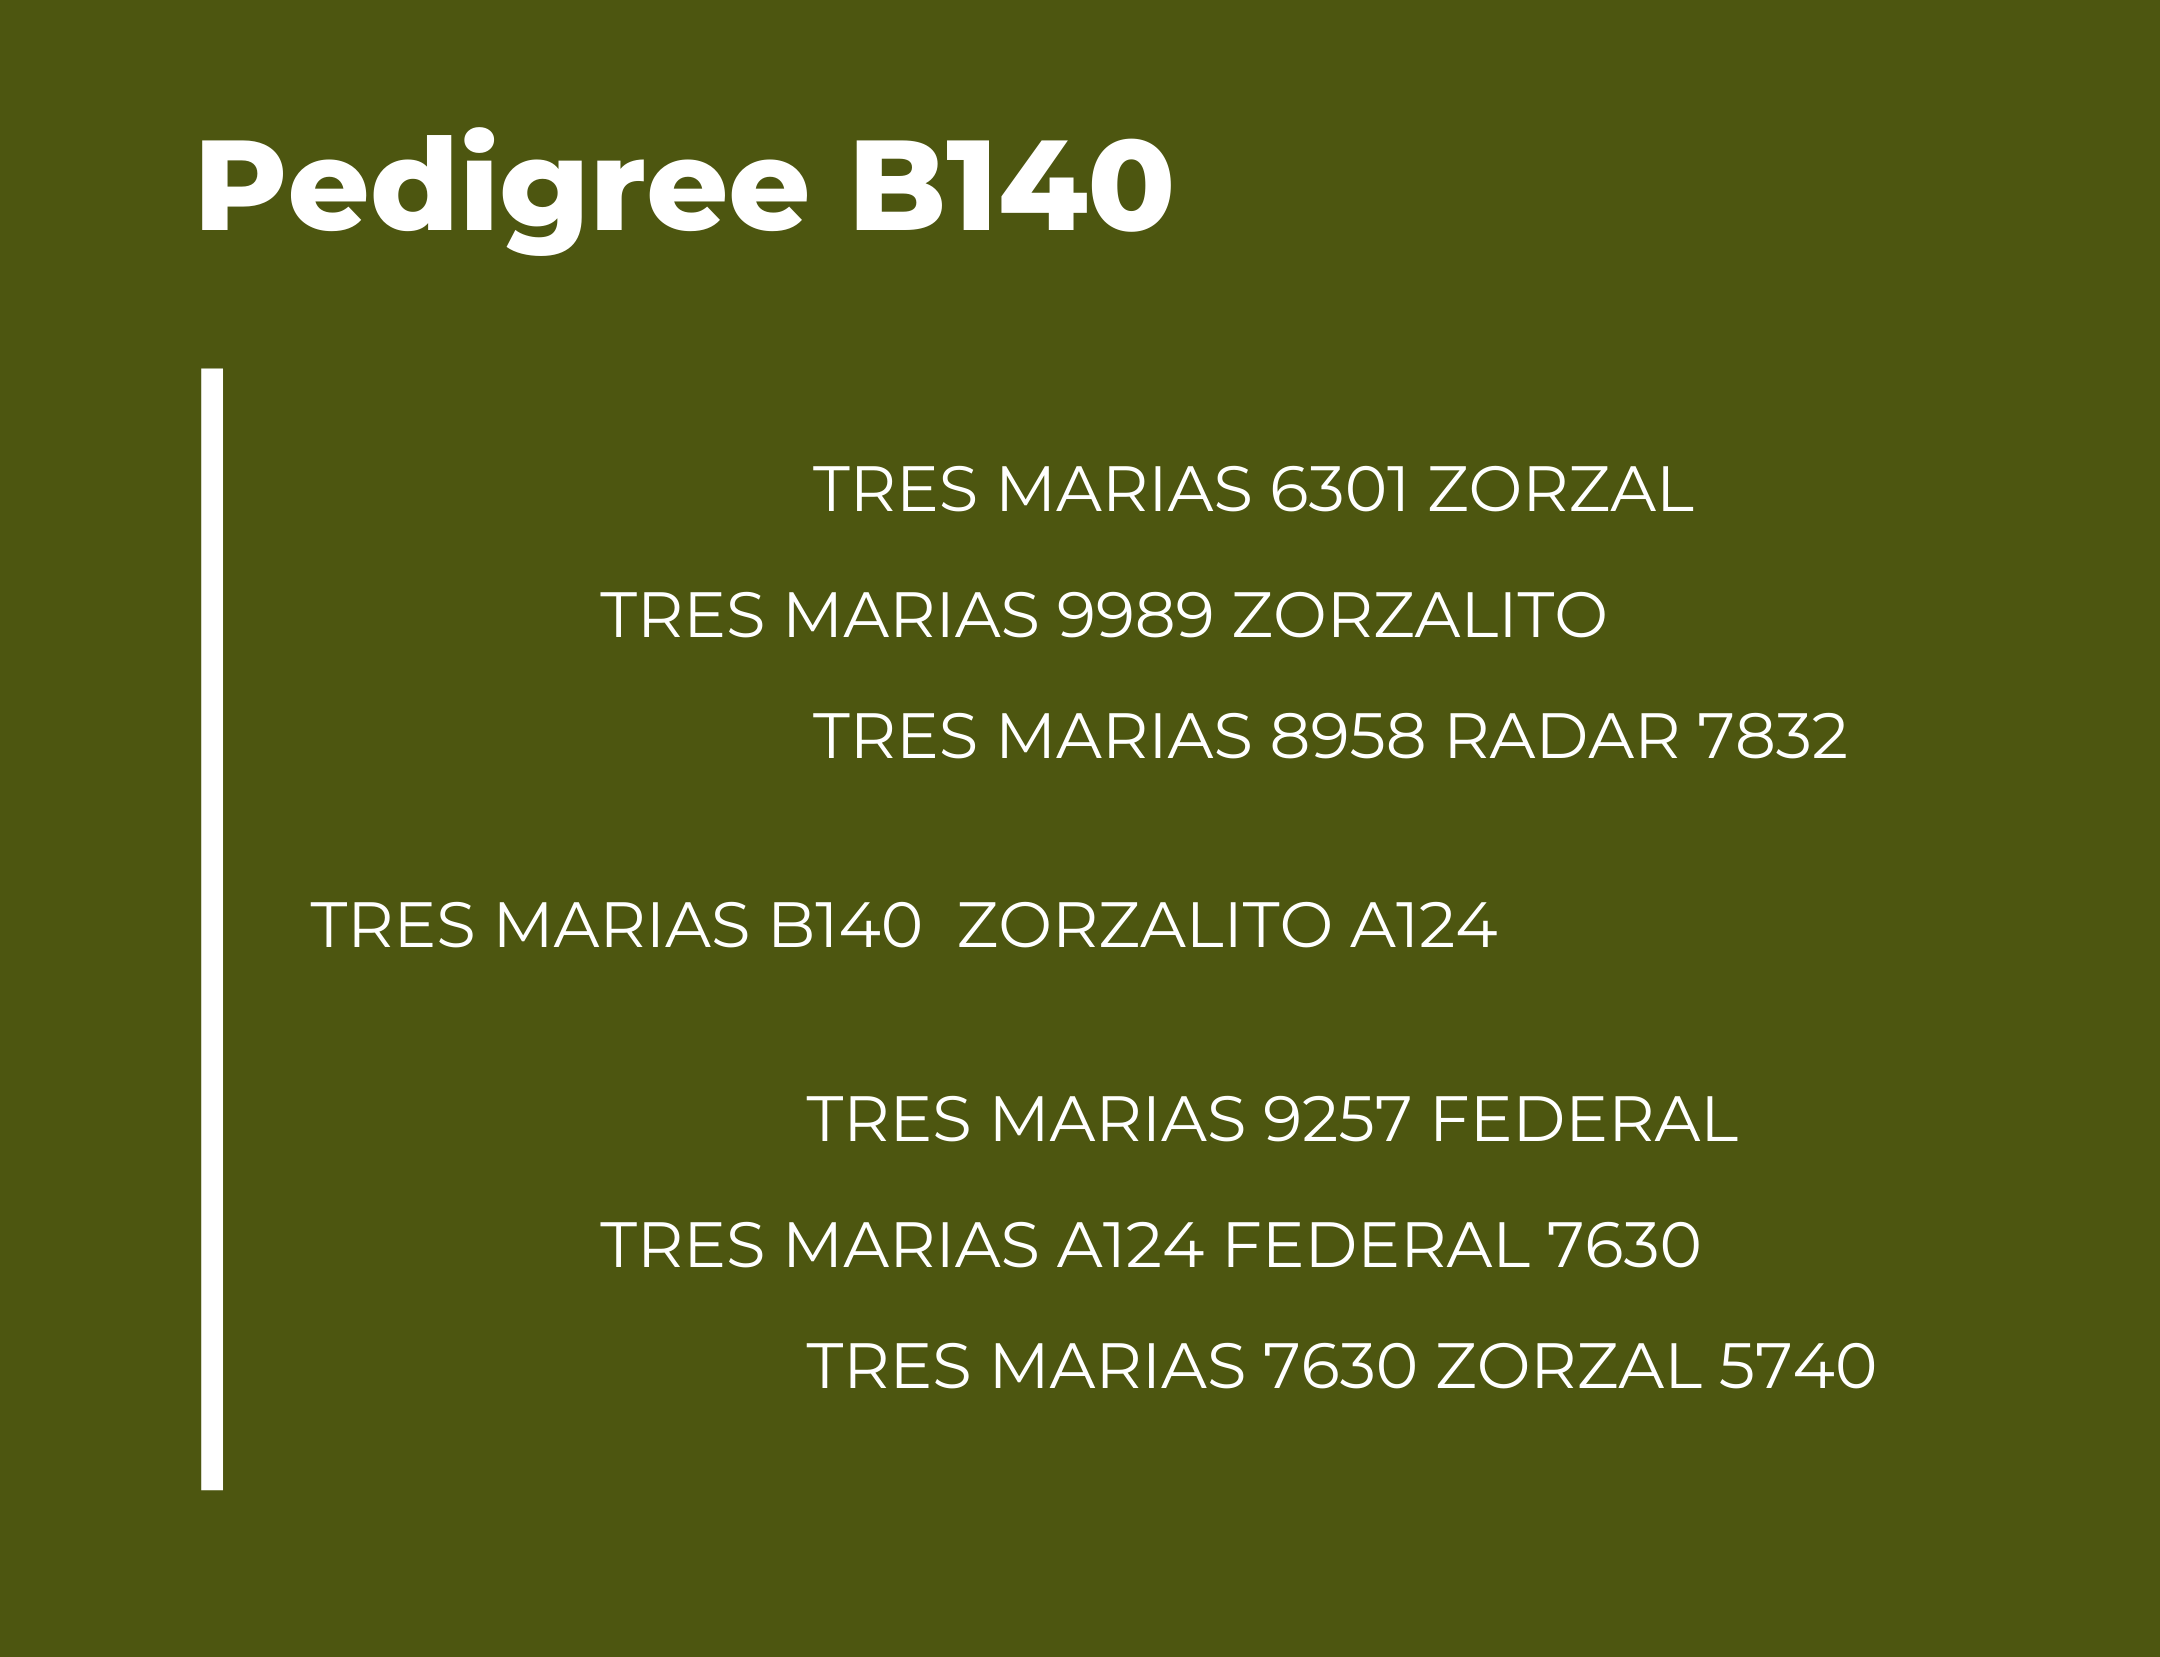 TM B140